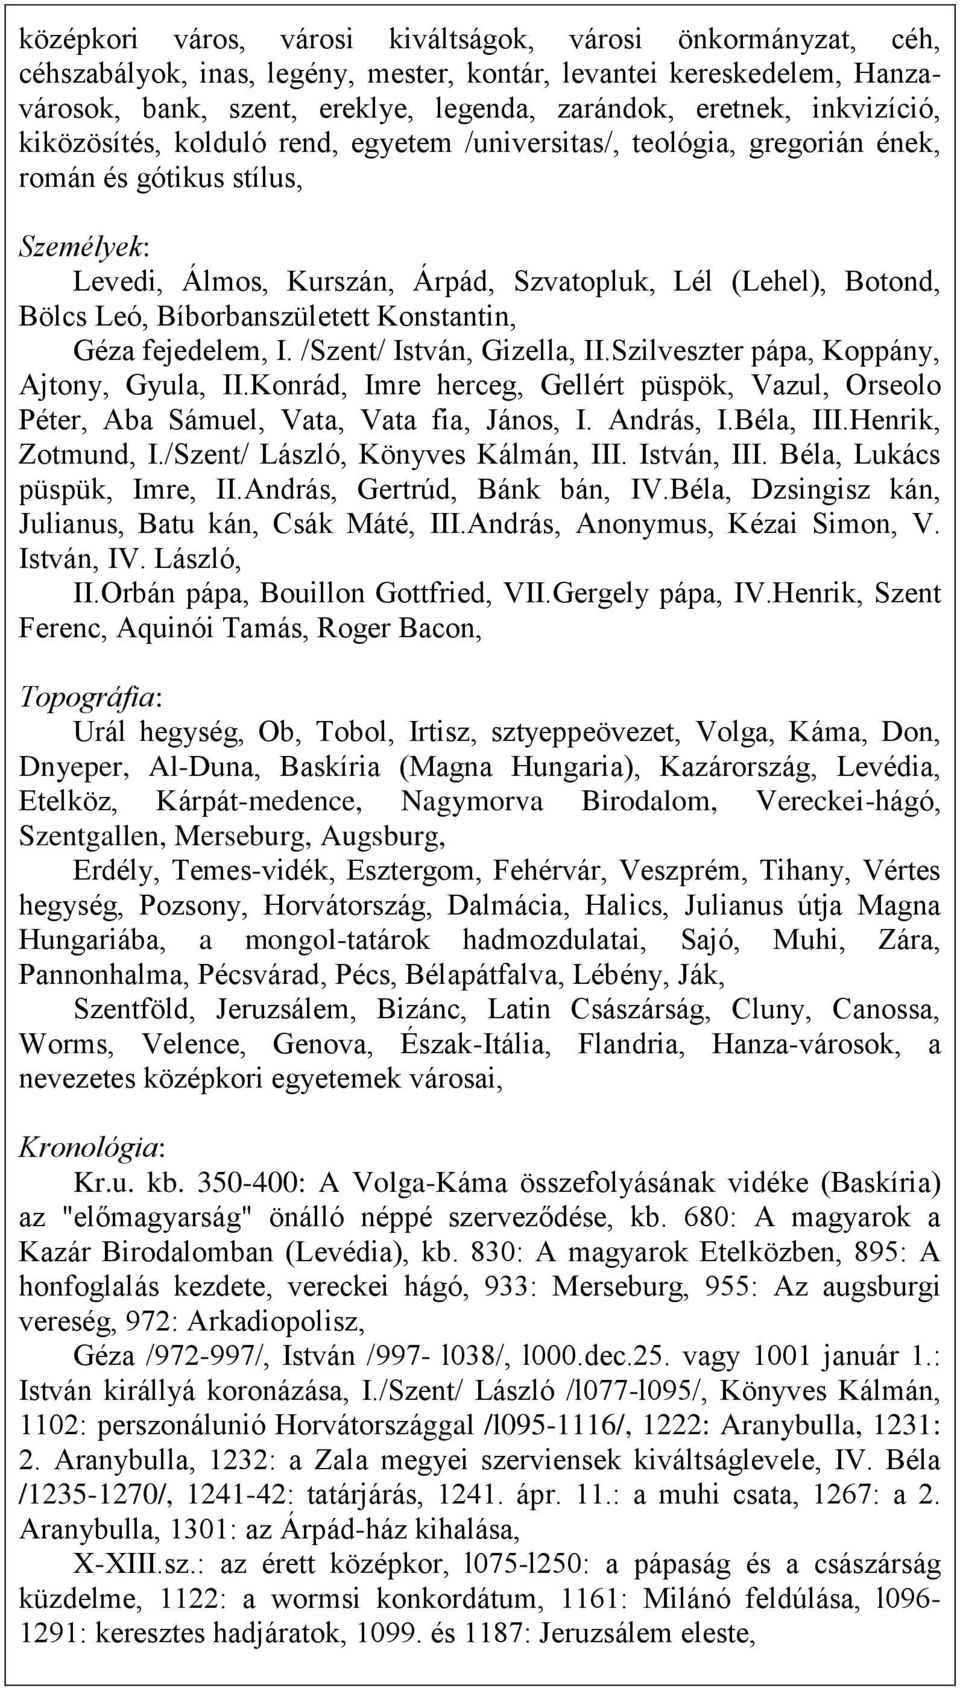 Bíborbanszületett Konstantin, Géza fejedelem, I. /Szent/ István, Gizella, II.Szilveszter pápa, Koppány, Ajtony, Gyula, II.